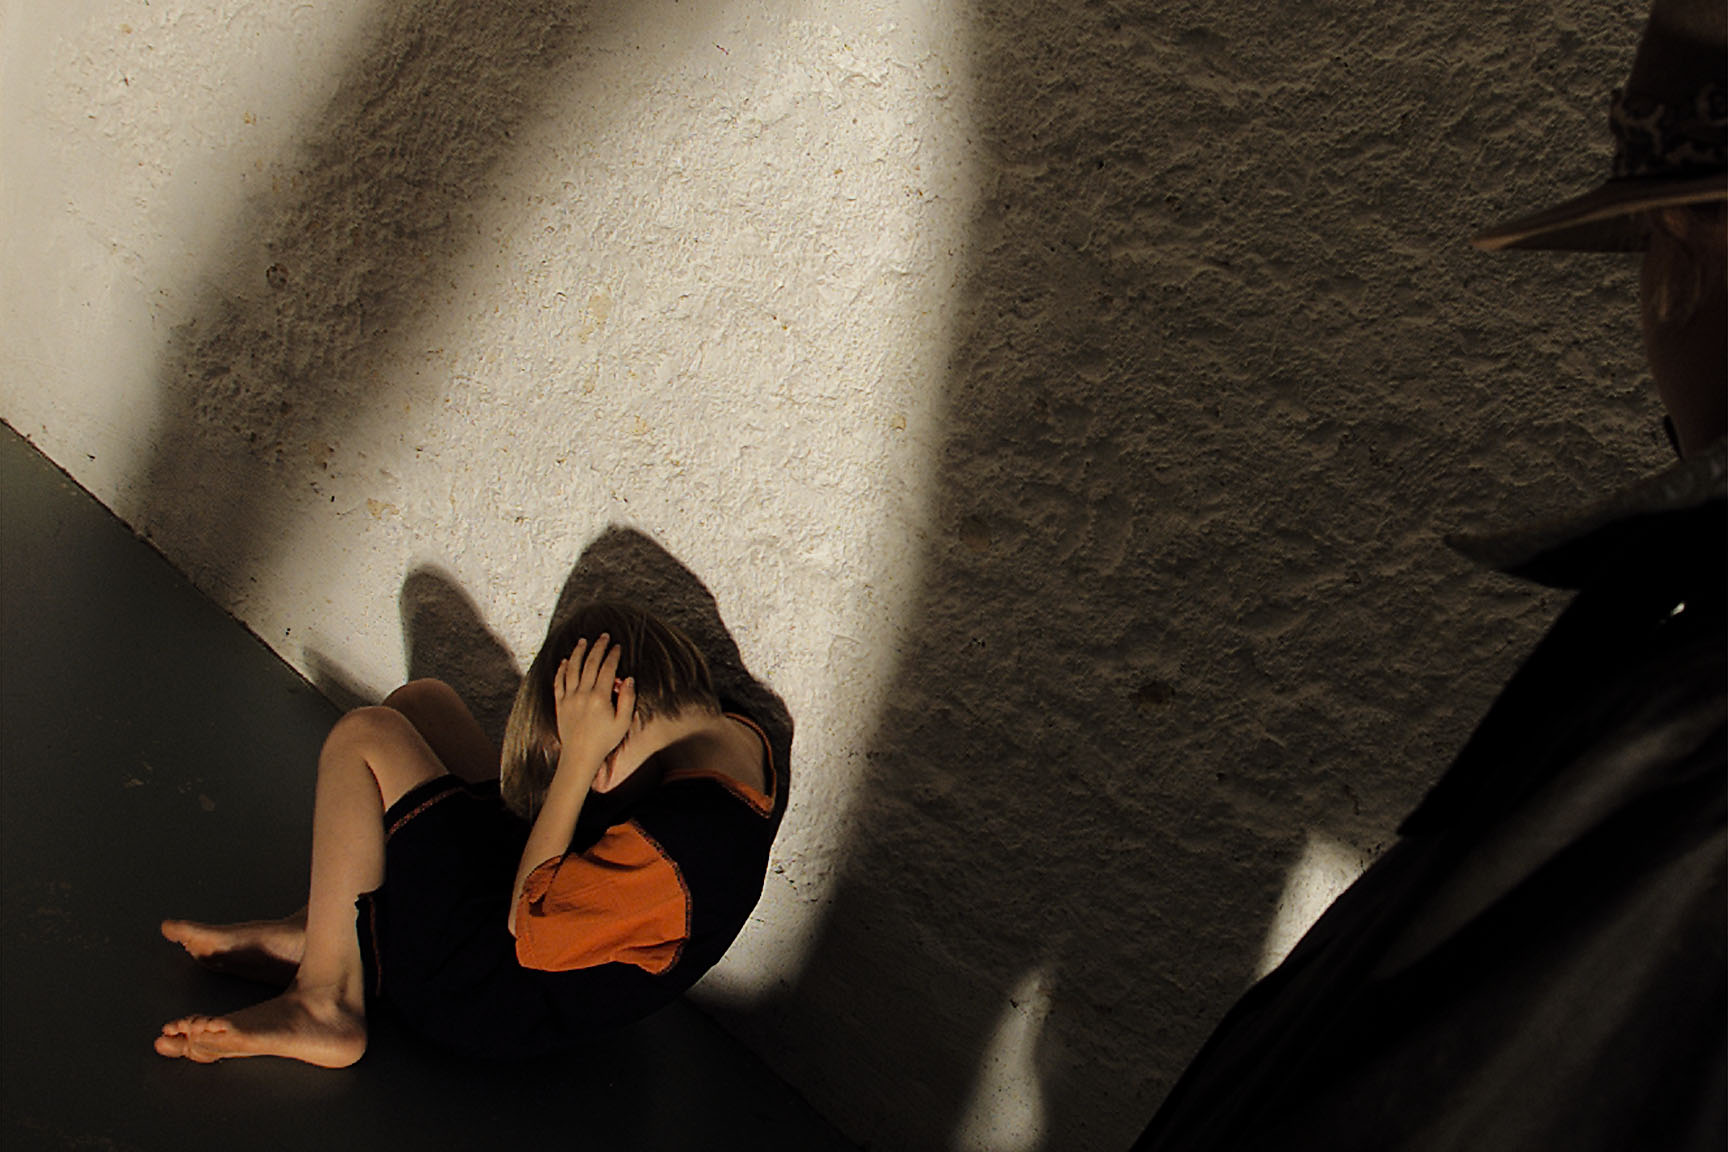 Le Suisse aurait abusé sexuellement de plus de 80 garçons, dont certains pendant plusieurs années.